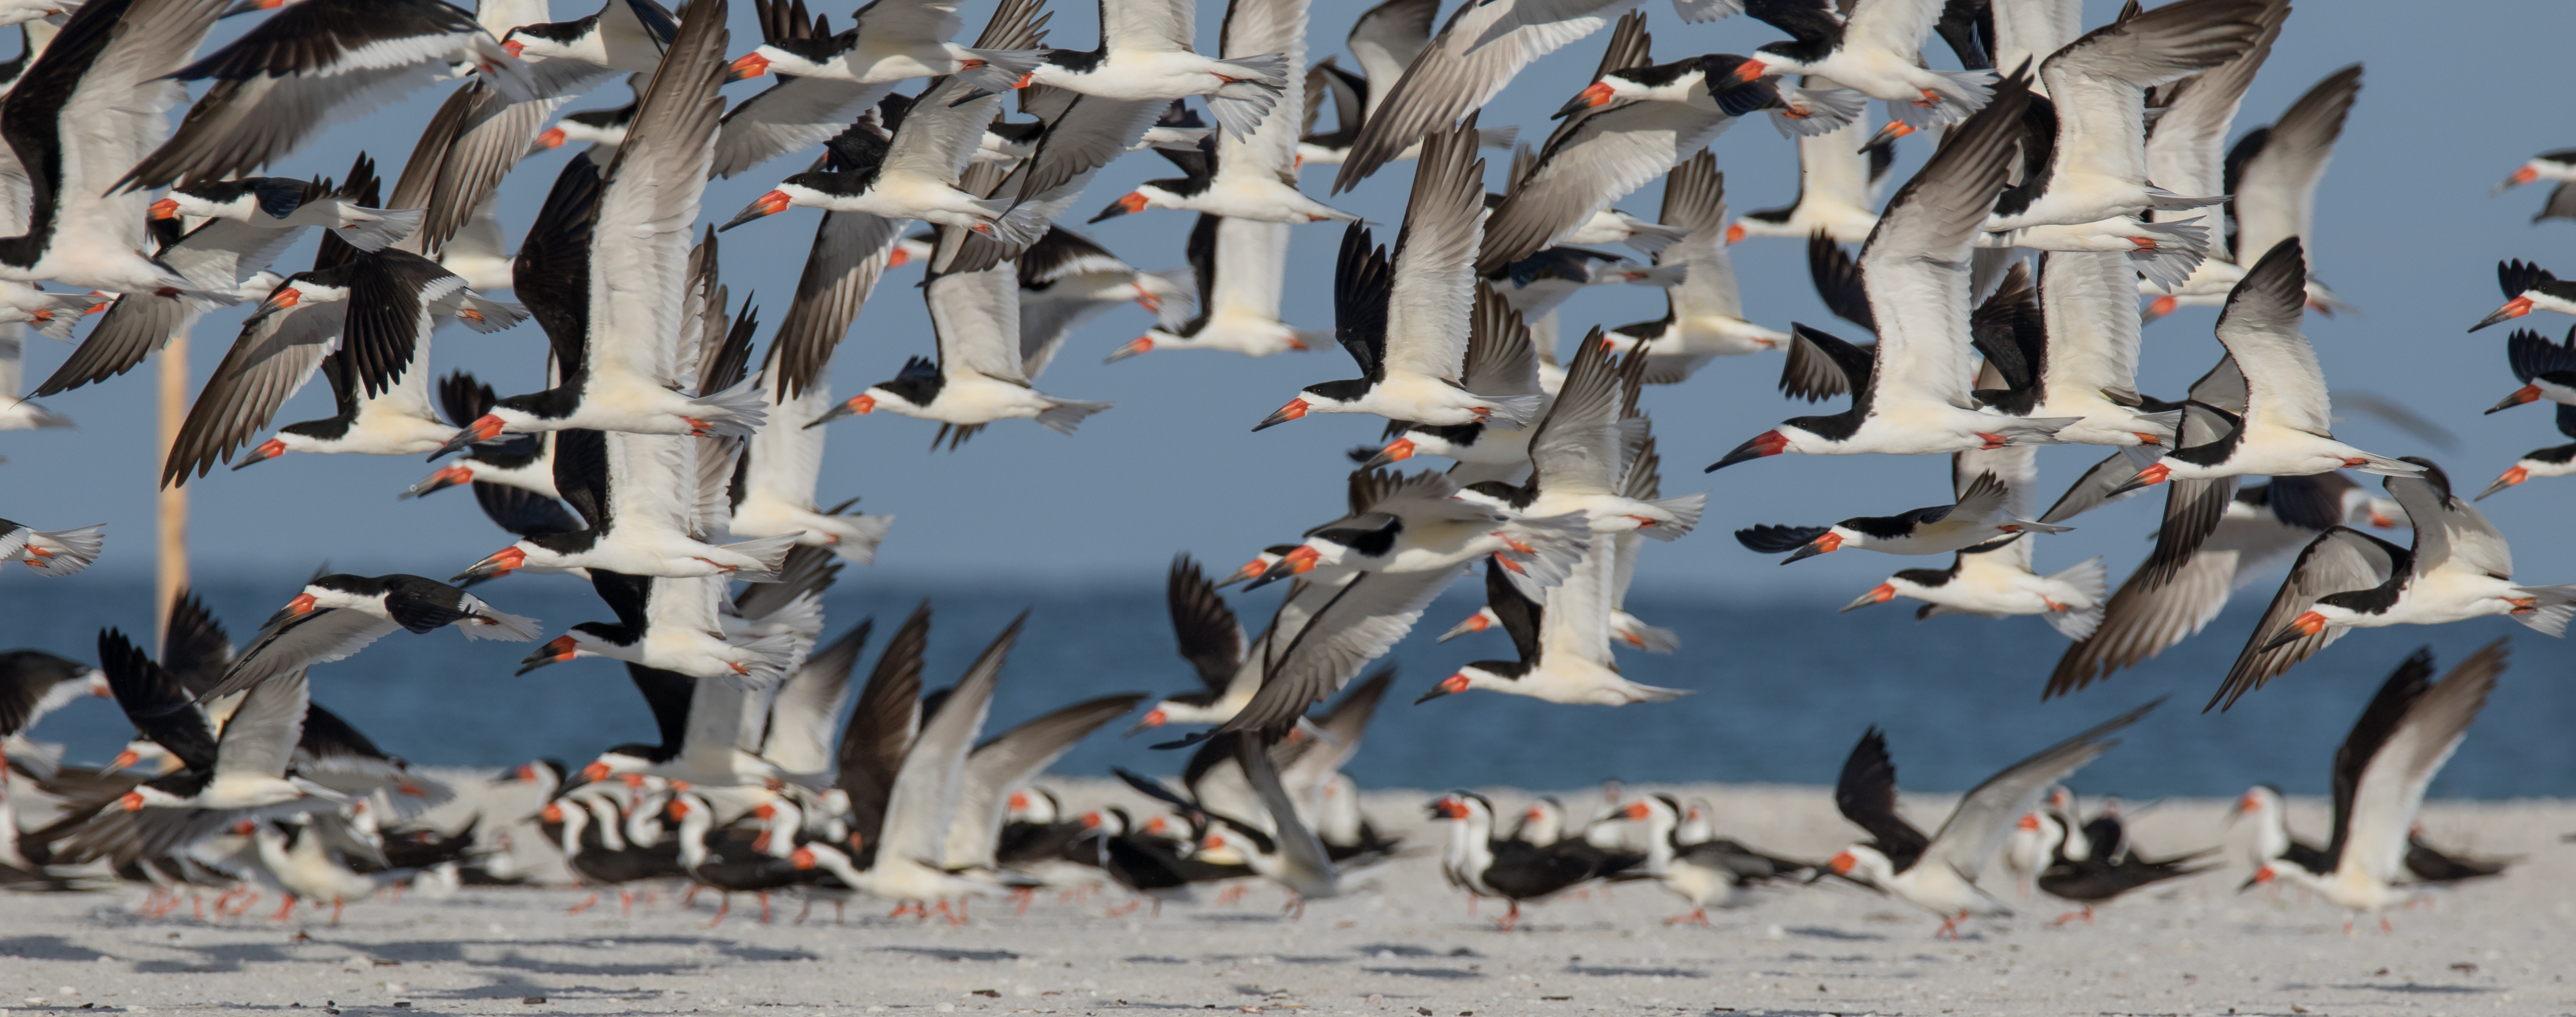 A flock of seabirds in flight